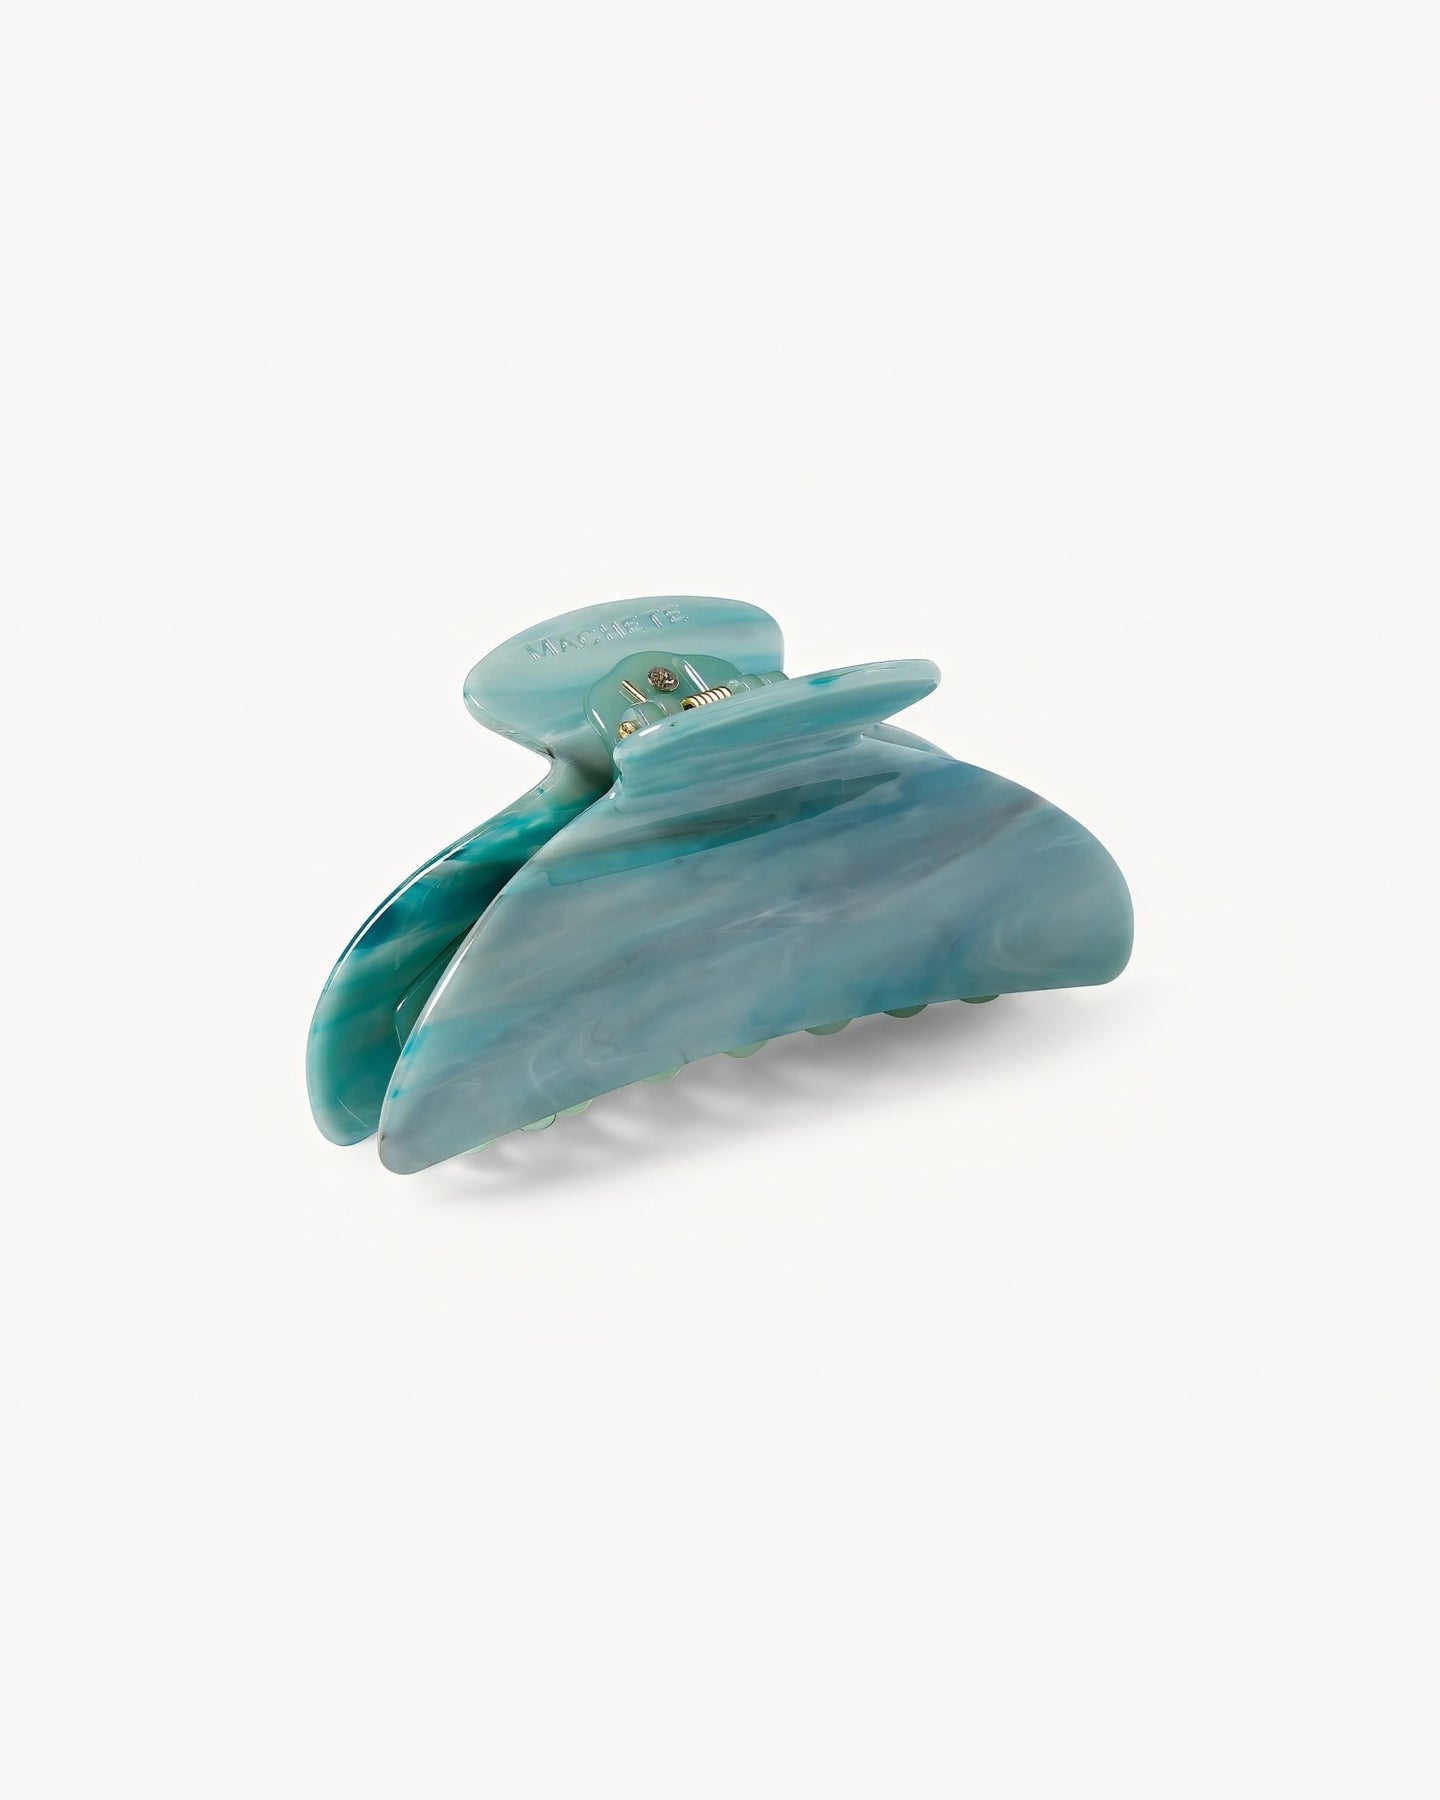 Machete Midi Heirloom Claw in Jadeite – MACHETE